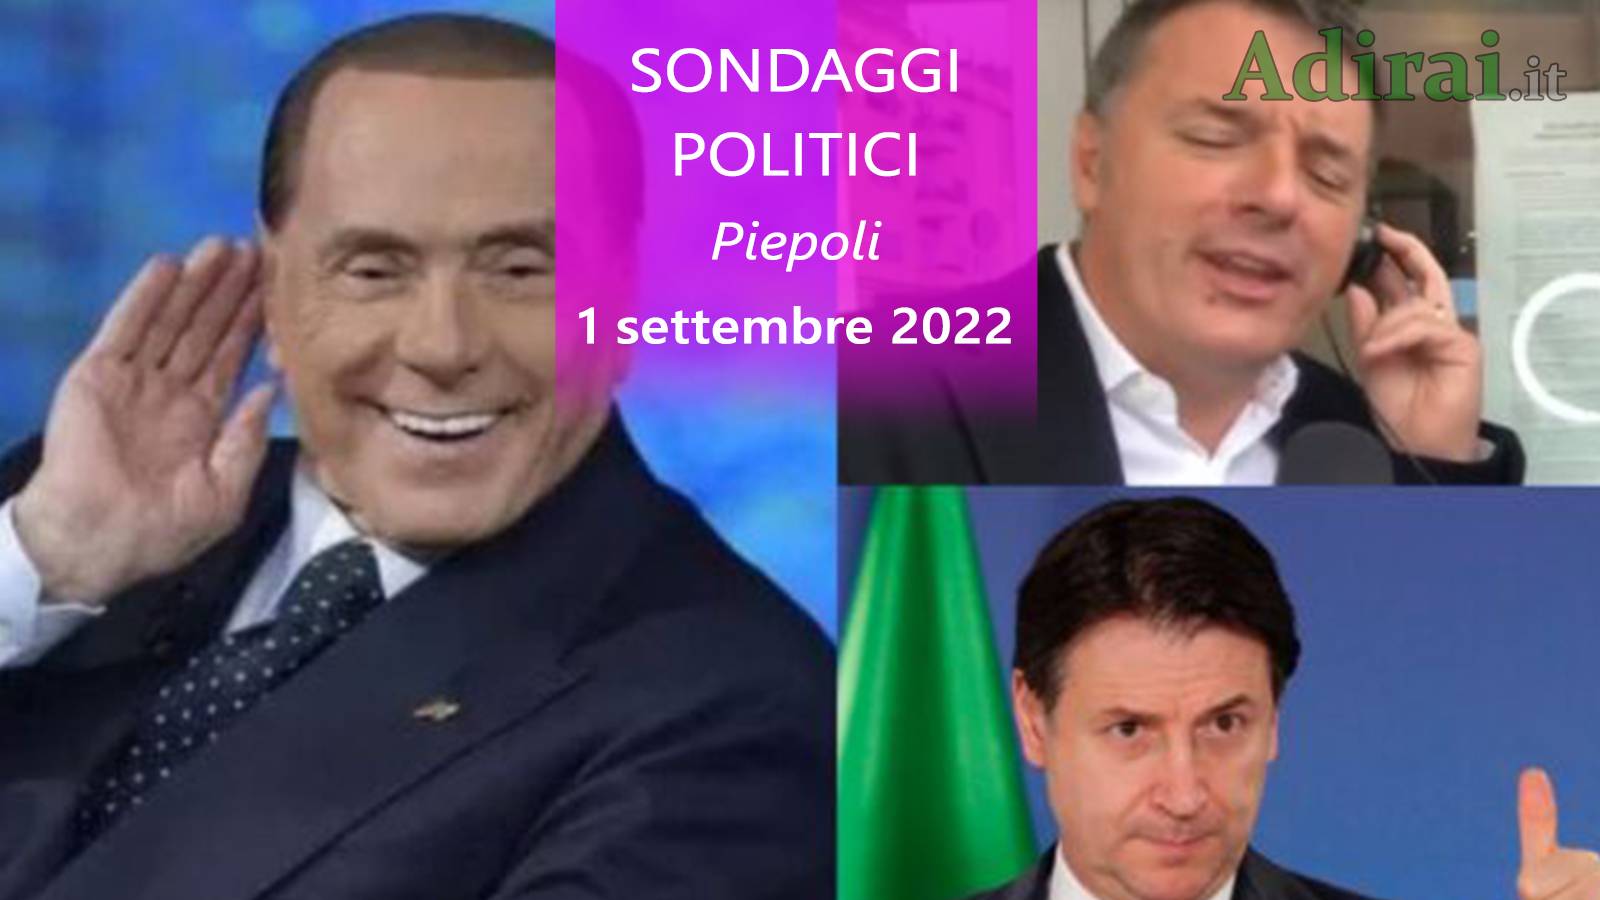 ultimi sondaggi politici 1 settembre 2022 piepoli di tutti i partiti italiani